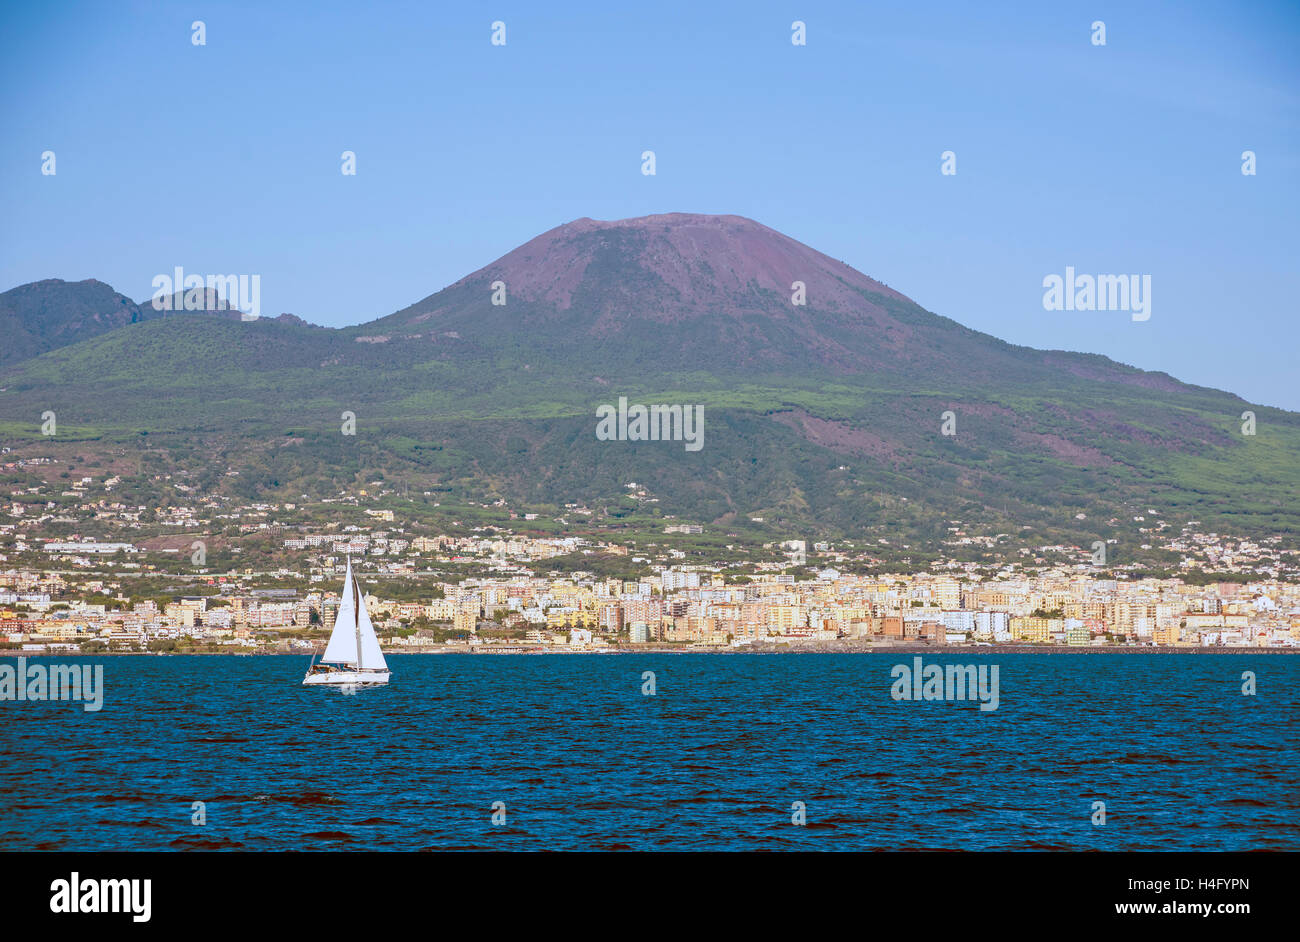 italy. Mount Vesuvius Stock Photo